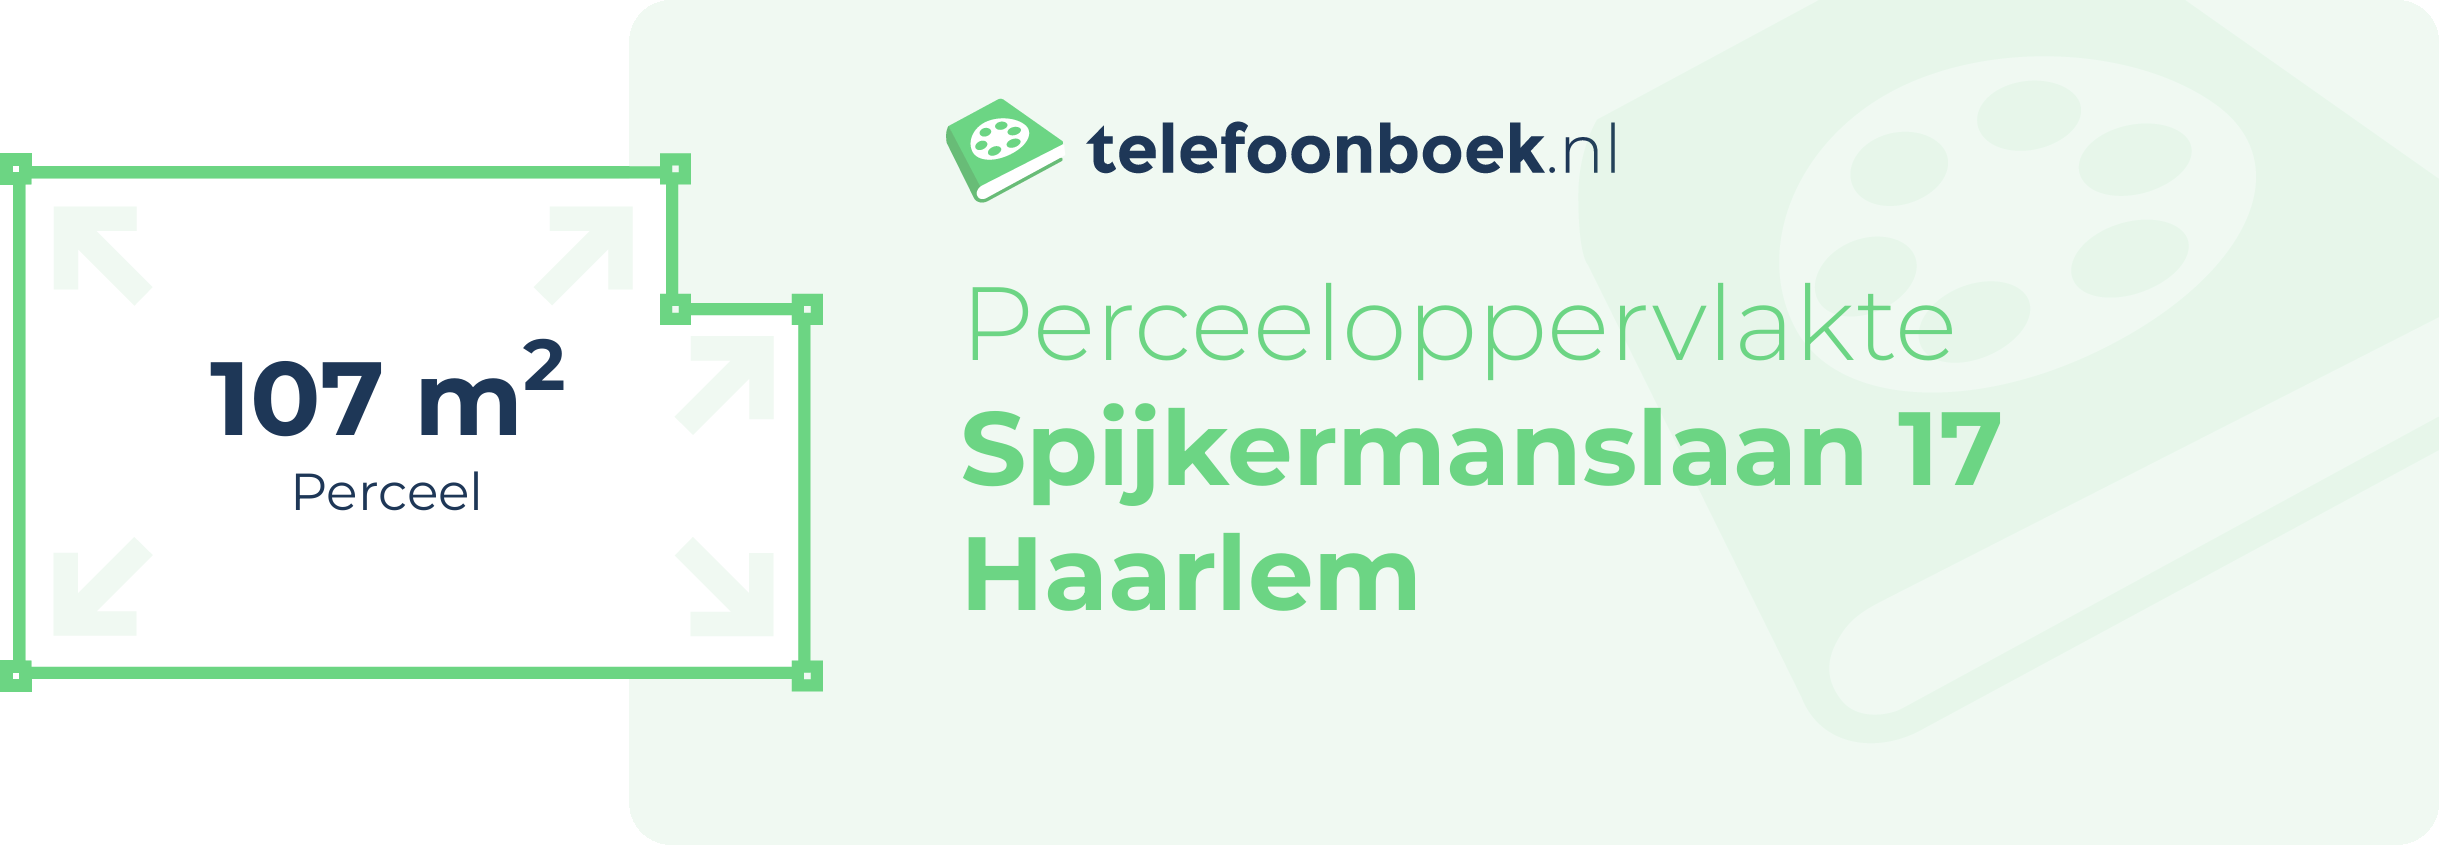 Perceeloppervlakte Spijkermanslaan 17 Haarlem